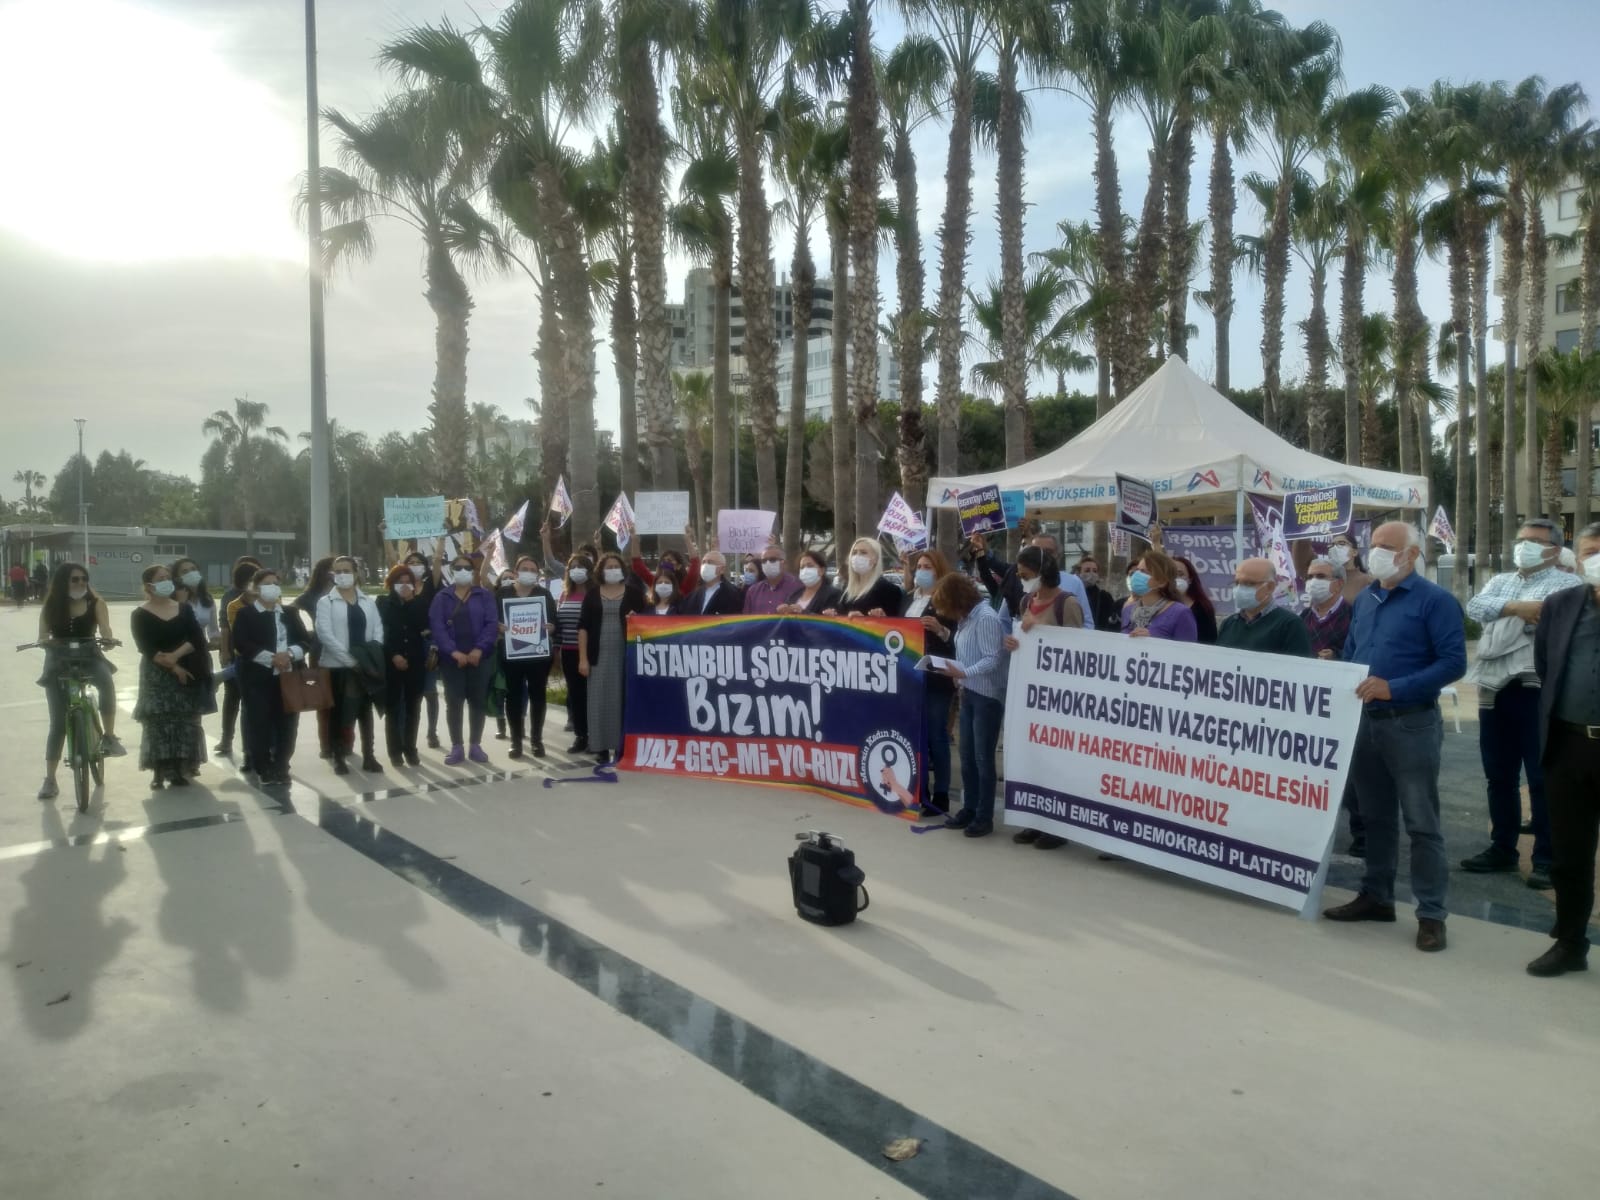 Mersin Emek ve Demokrasi Platformu: İstanbul Sözleşmesi’nden ve Demokrasiden Vazgeçmiyoruz